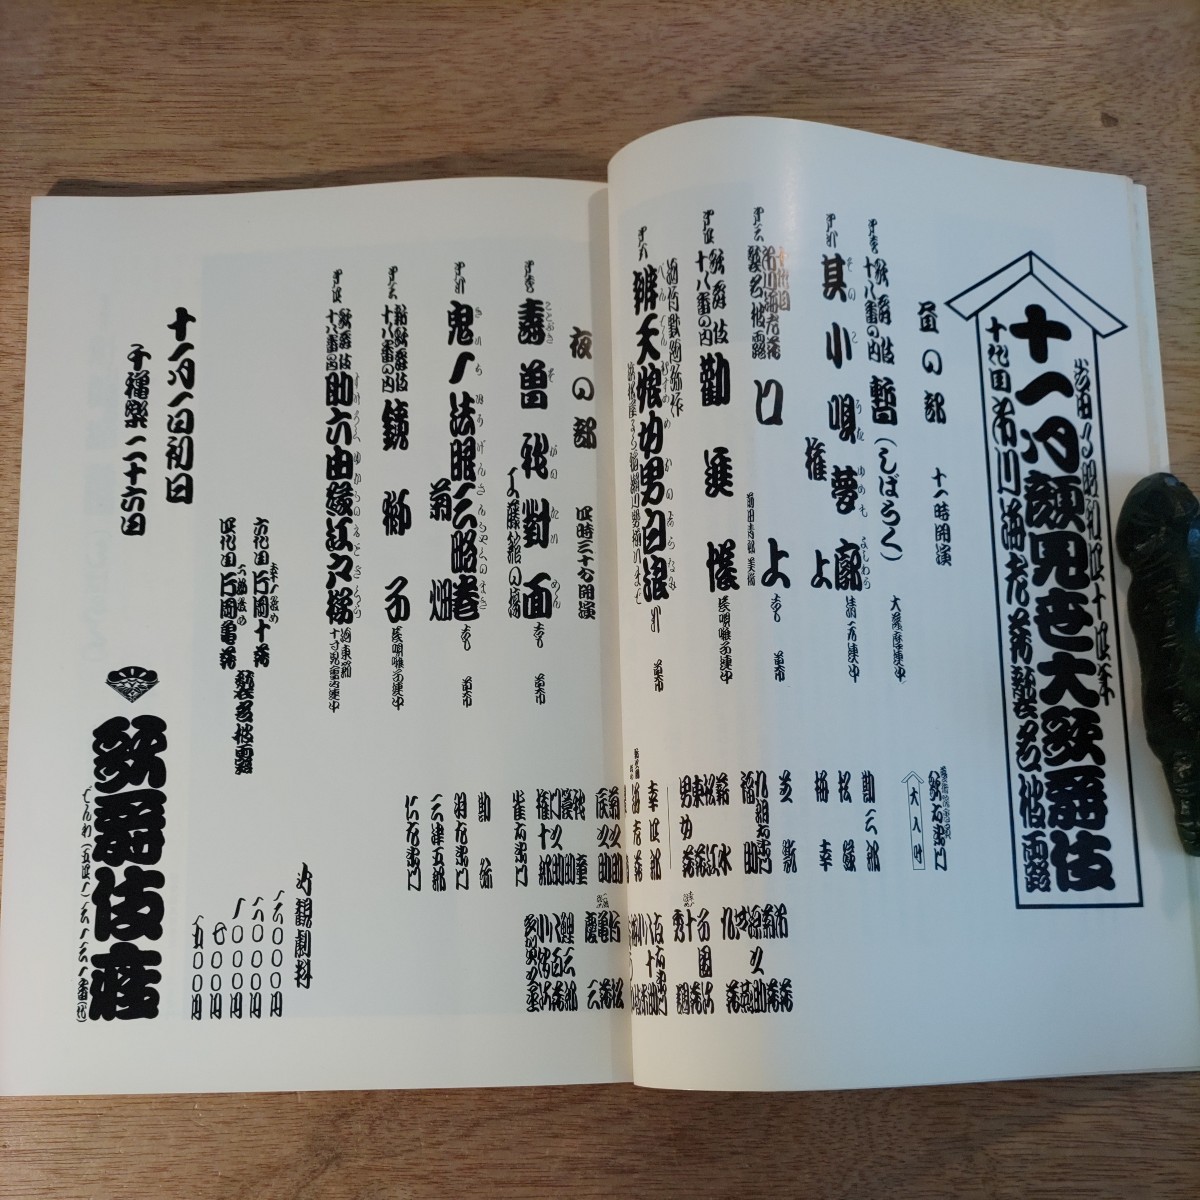 歌舞伎 パンフレット 1969年 昭和44年 歌舞伎座 顔見世 古本 印刷物 レトロ アンティーク コレクション レア 希少 市川海老蔵 襲名披露 _画像5